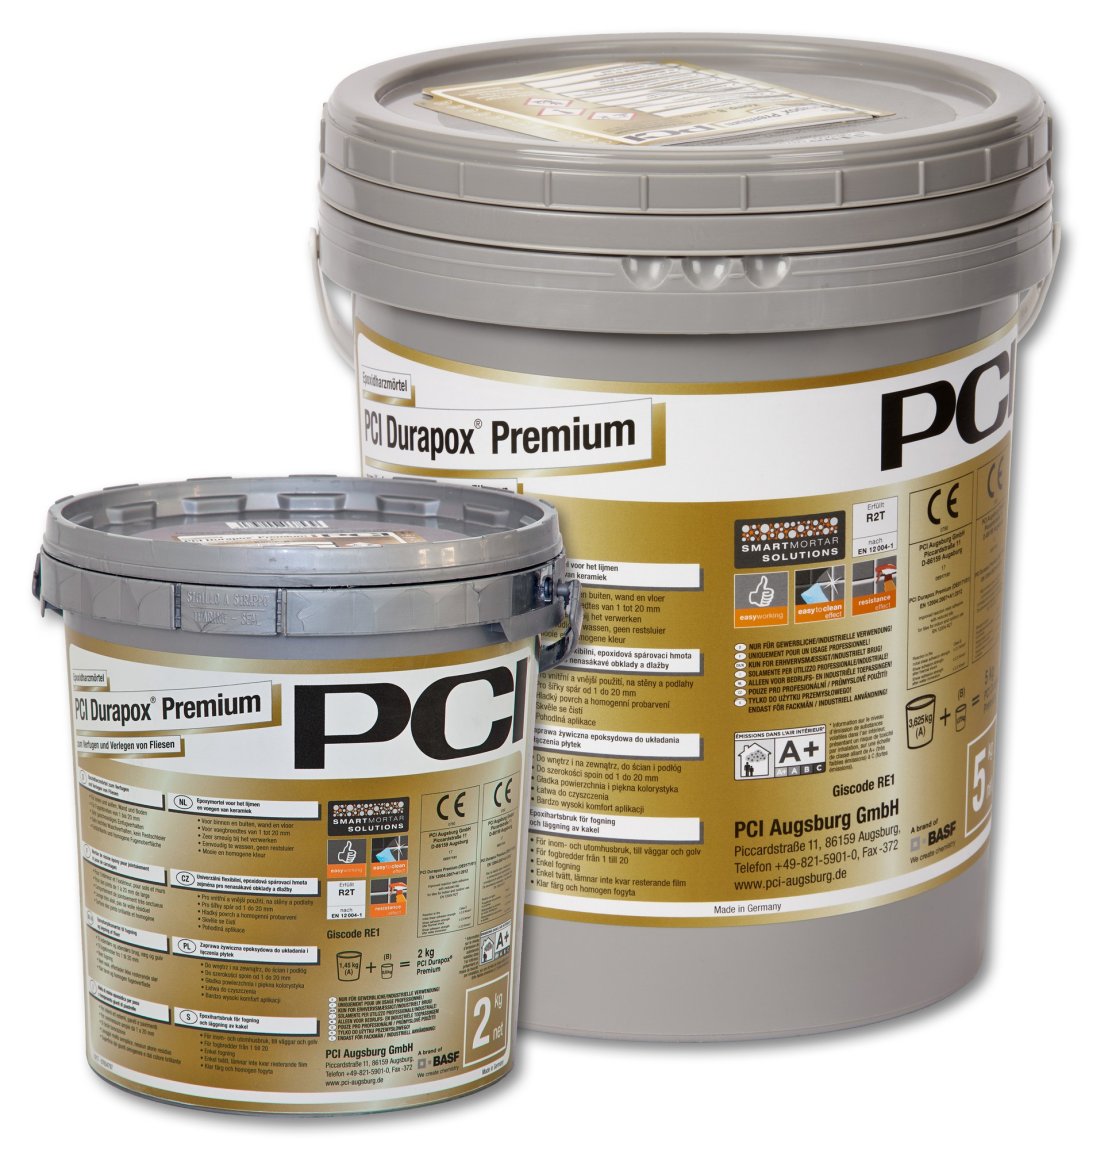 PCI Durapox Premium spárovací hmota bahamabeige 2kg - Suché směsi a stavební chemie spárovací hmoty